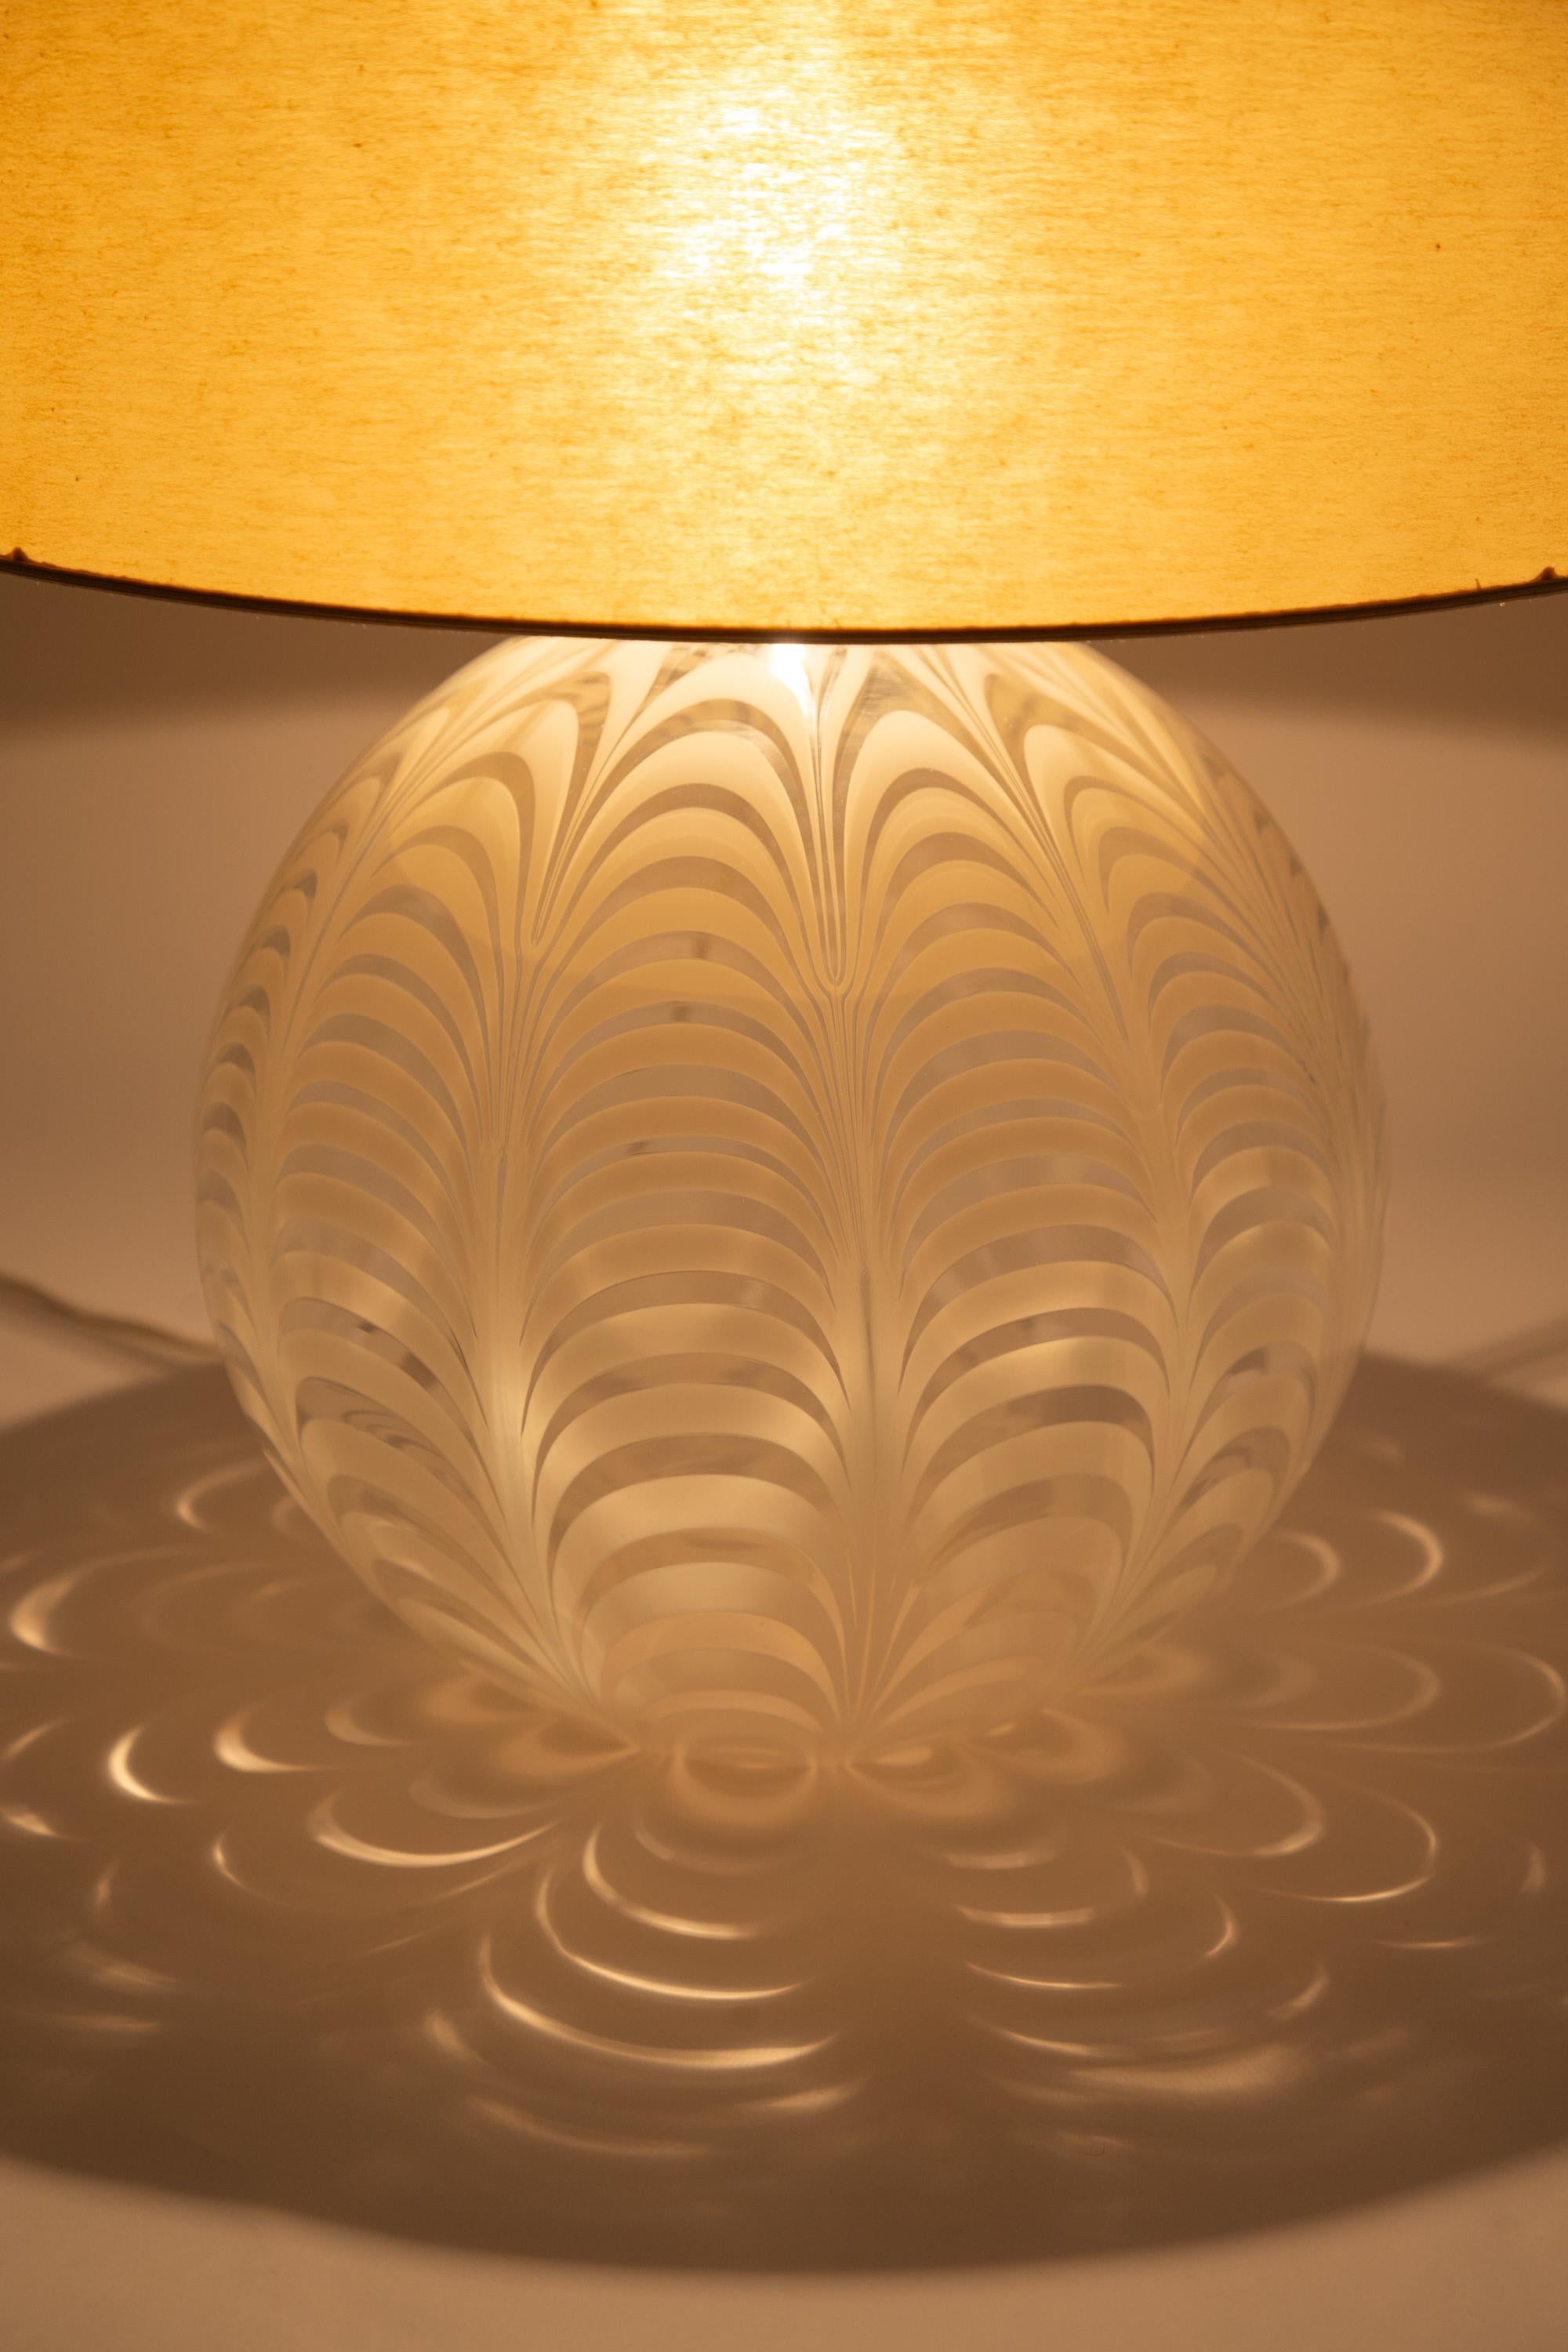 Lampe de table en verre soufflé à motif phénicien. Murano, années 1970.

Conserve l'abat-jour en lin laminé d'origine en bon état. Un abat-jour plus petit, en tissu ou en parchemin, peut être réalisé sur mesure.

Dimensions de la base : 39 x 39